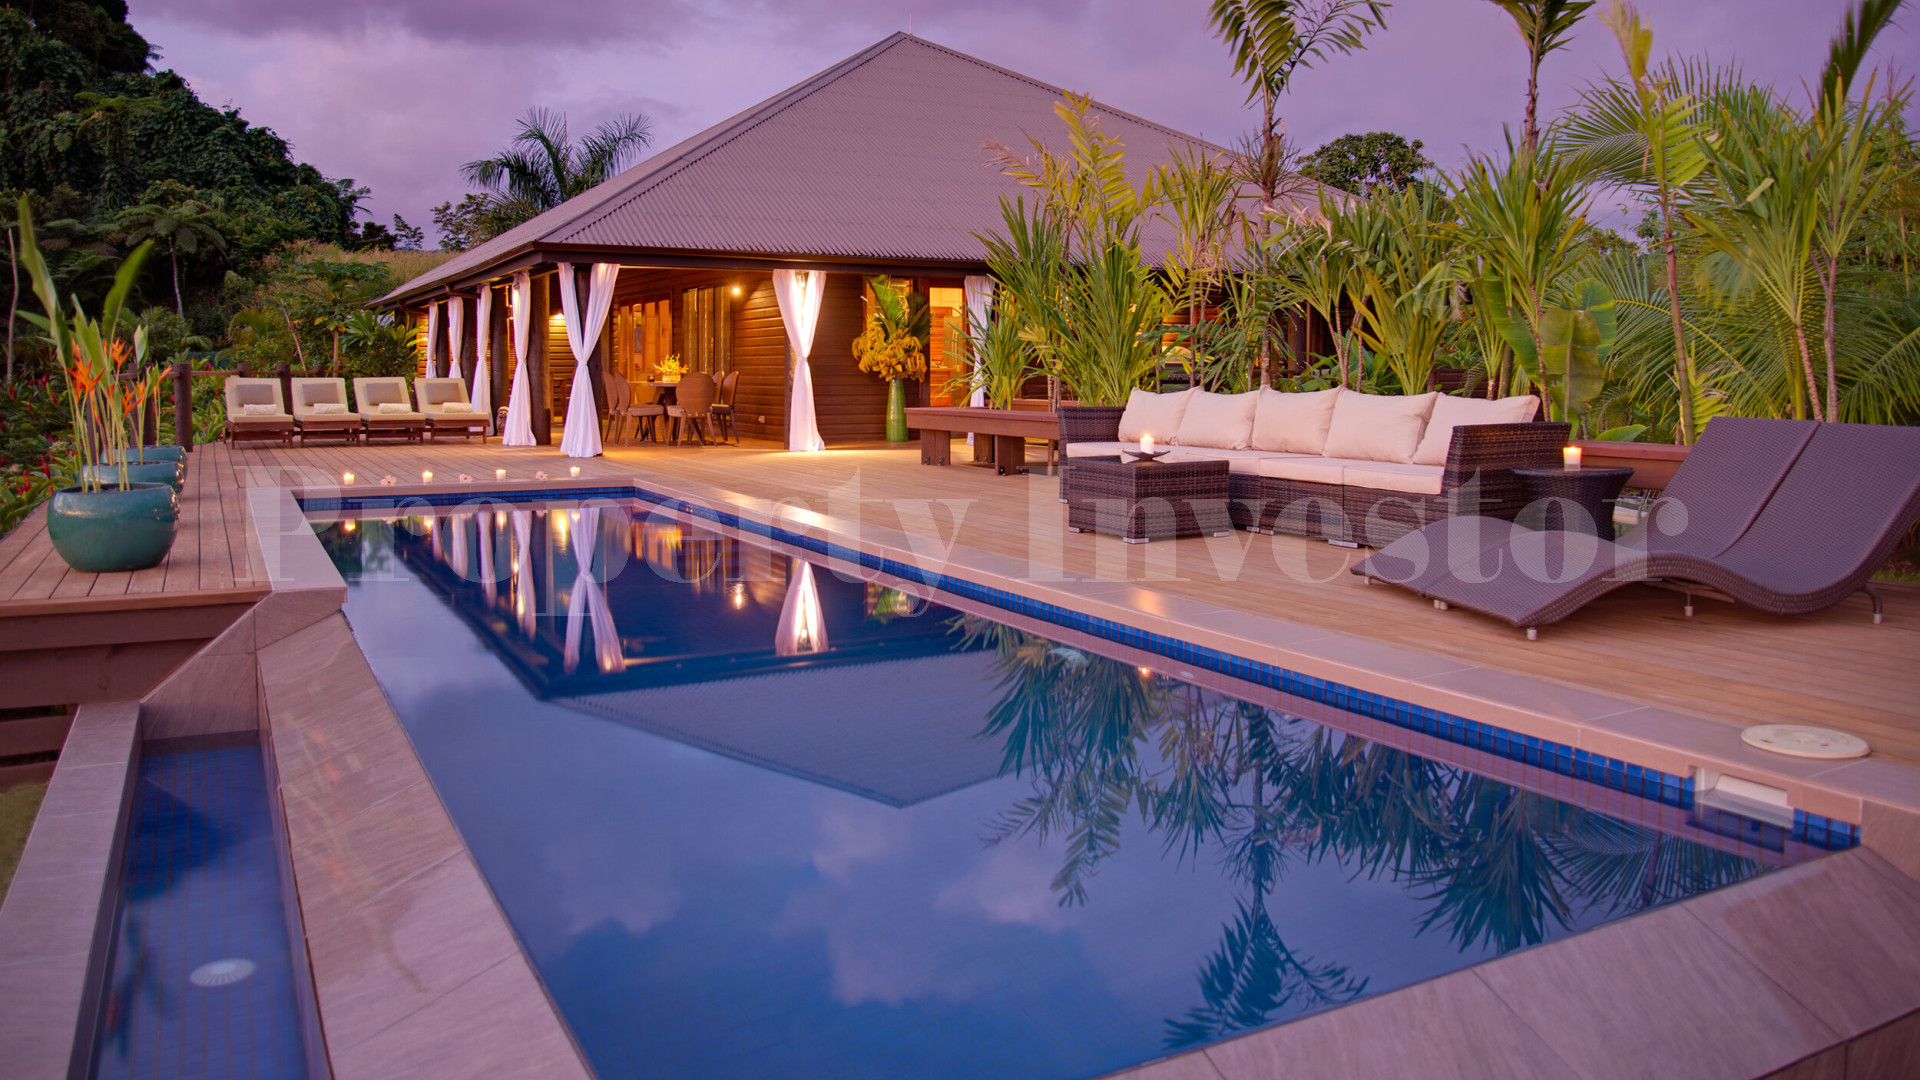 Продается обладатель наград роскошный 5* отель на Фиджи